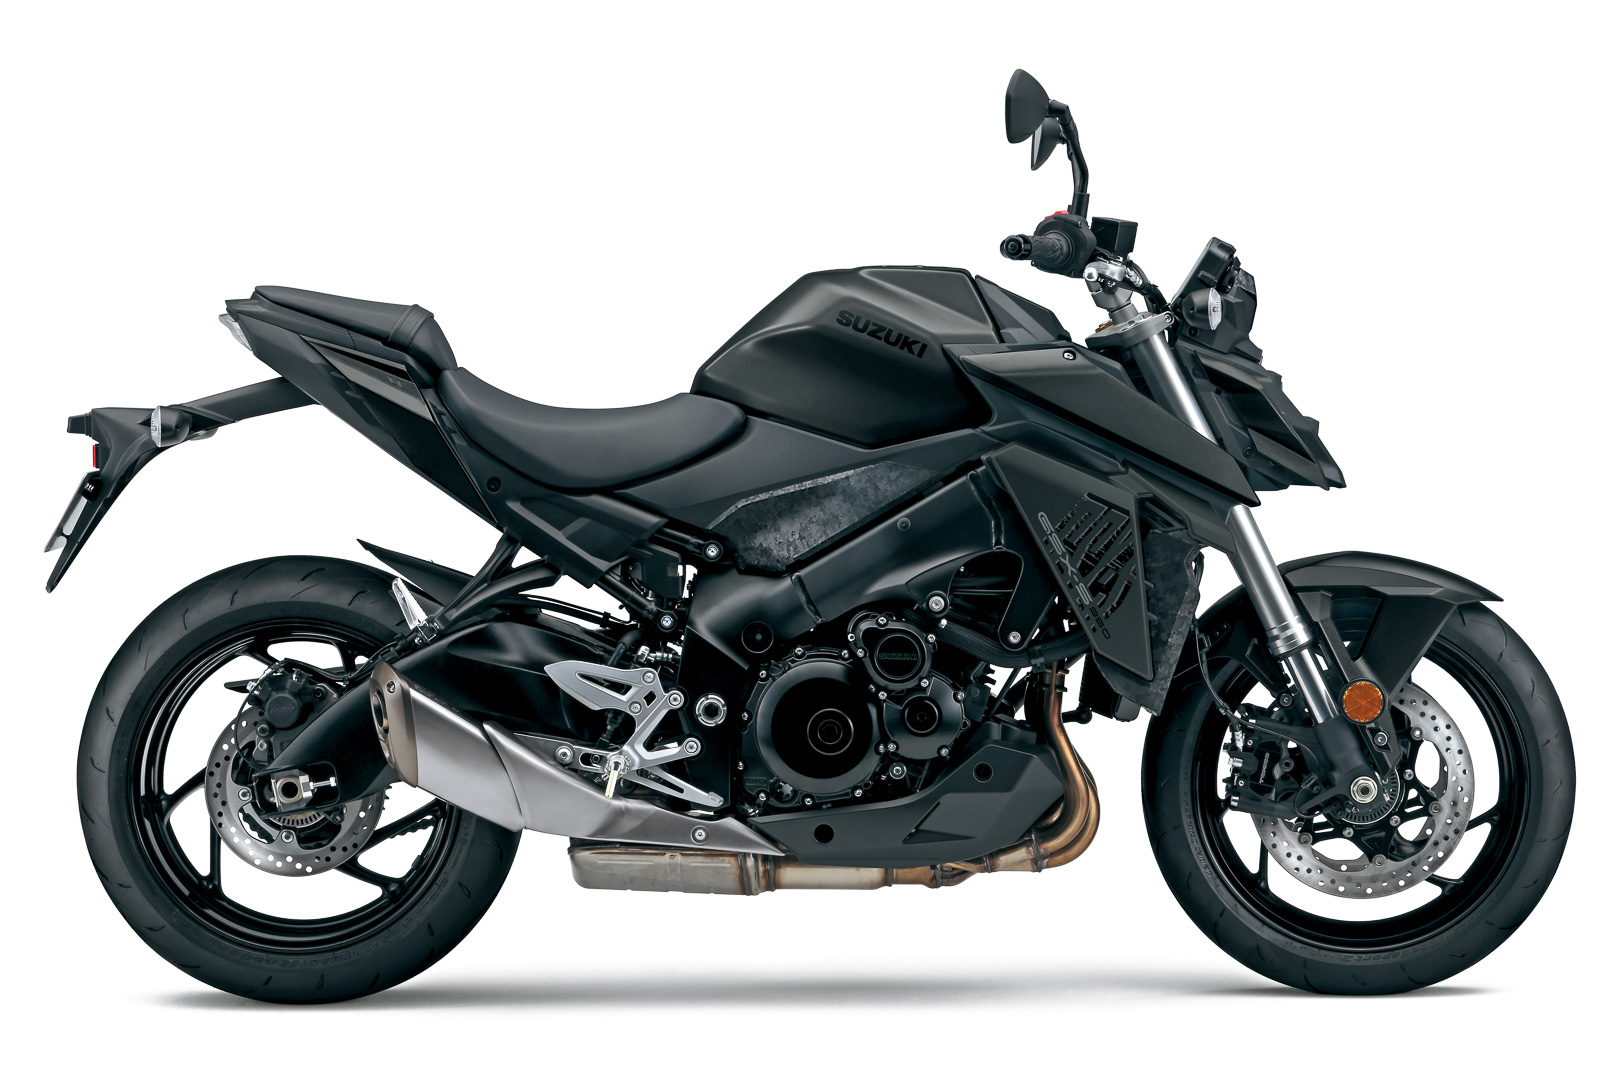 2022 suzuki gsx s950 first look sport motorcycle 1